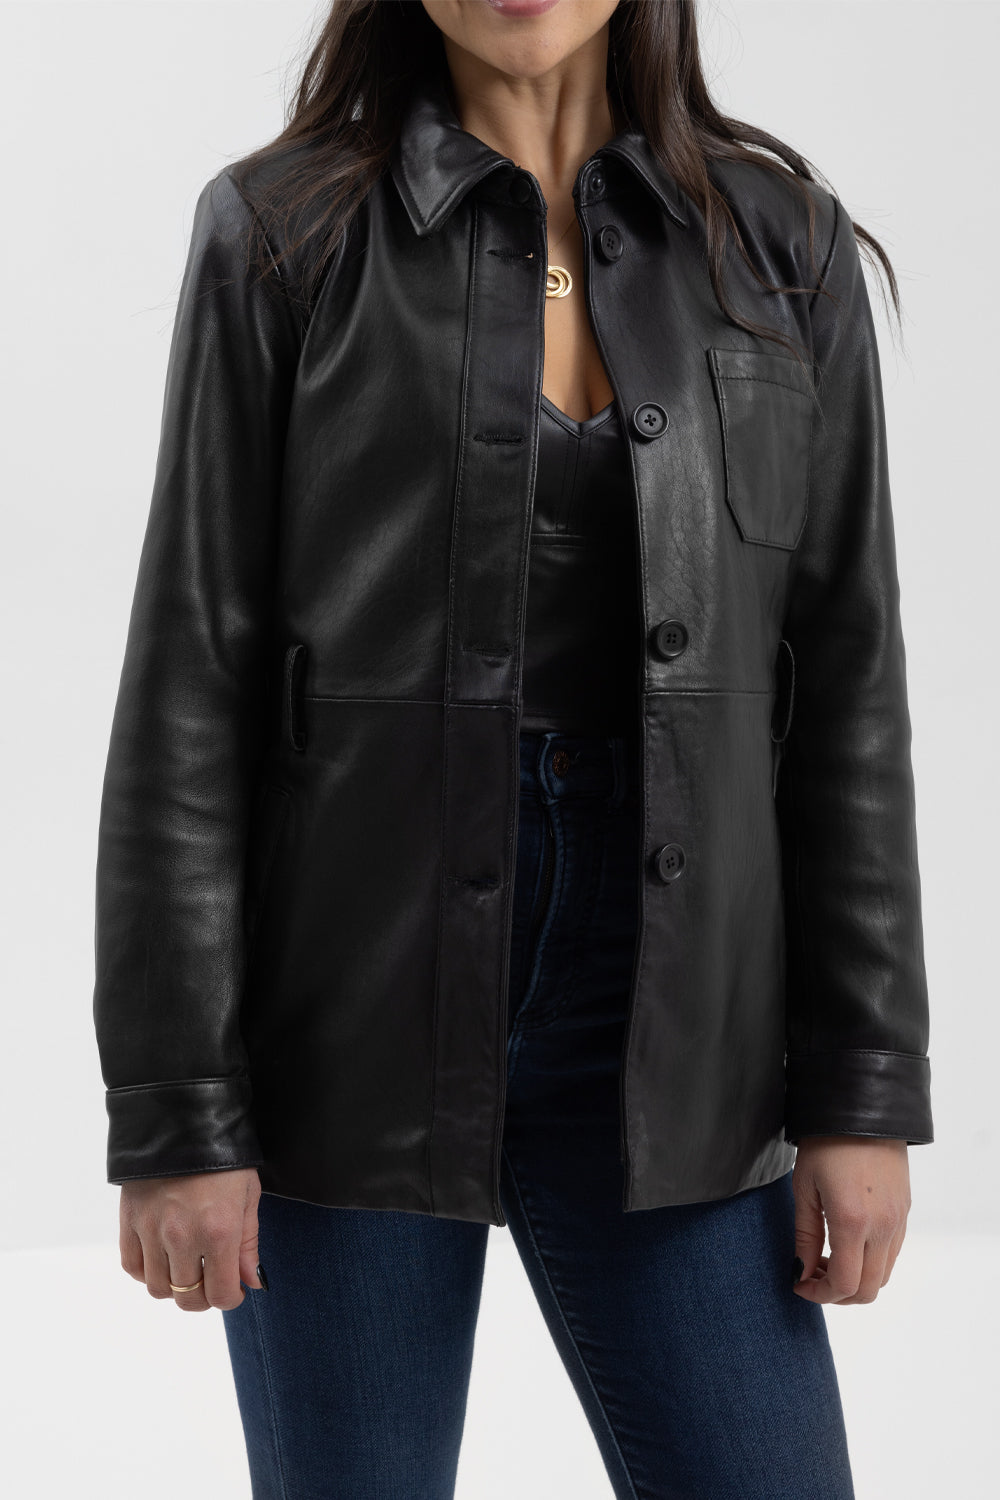 Premium Women's Fashion Leather Jacket